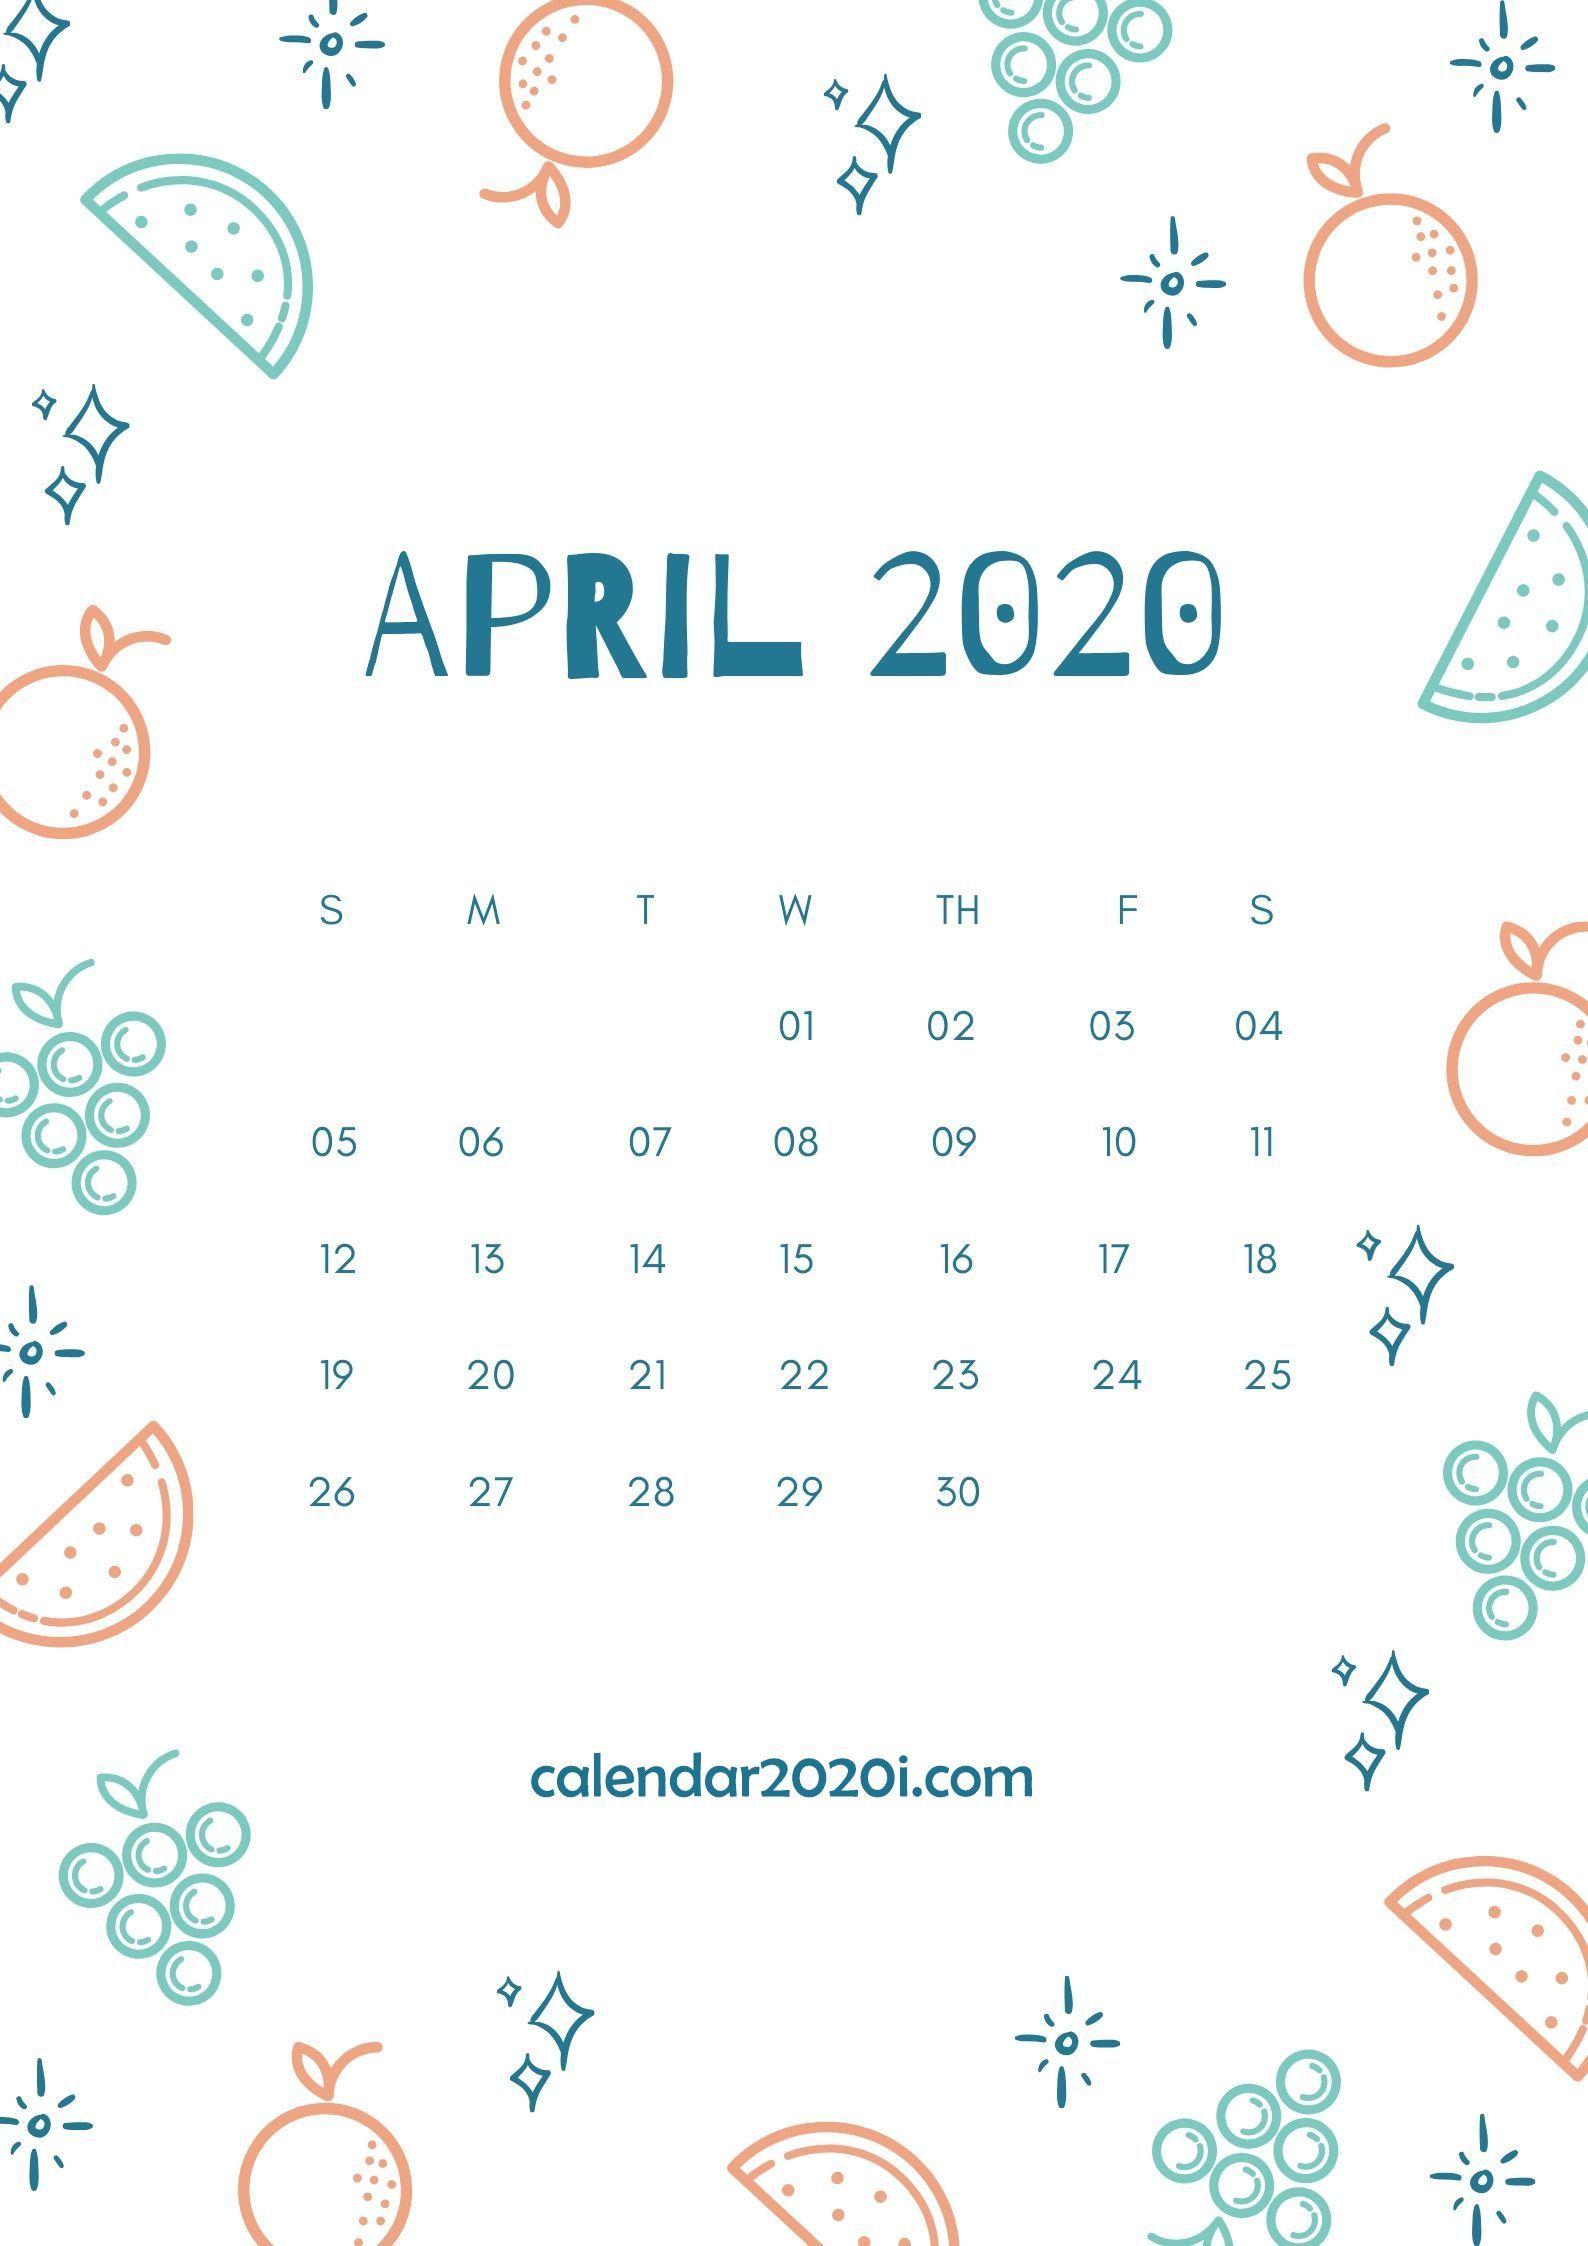 April 2020 Calendar Wallpaper Free April 2020